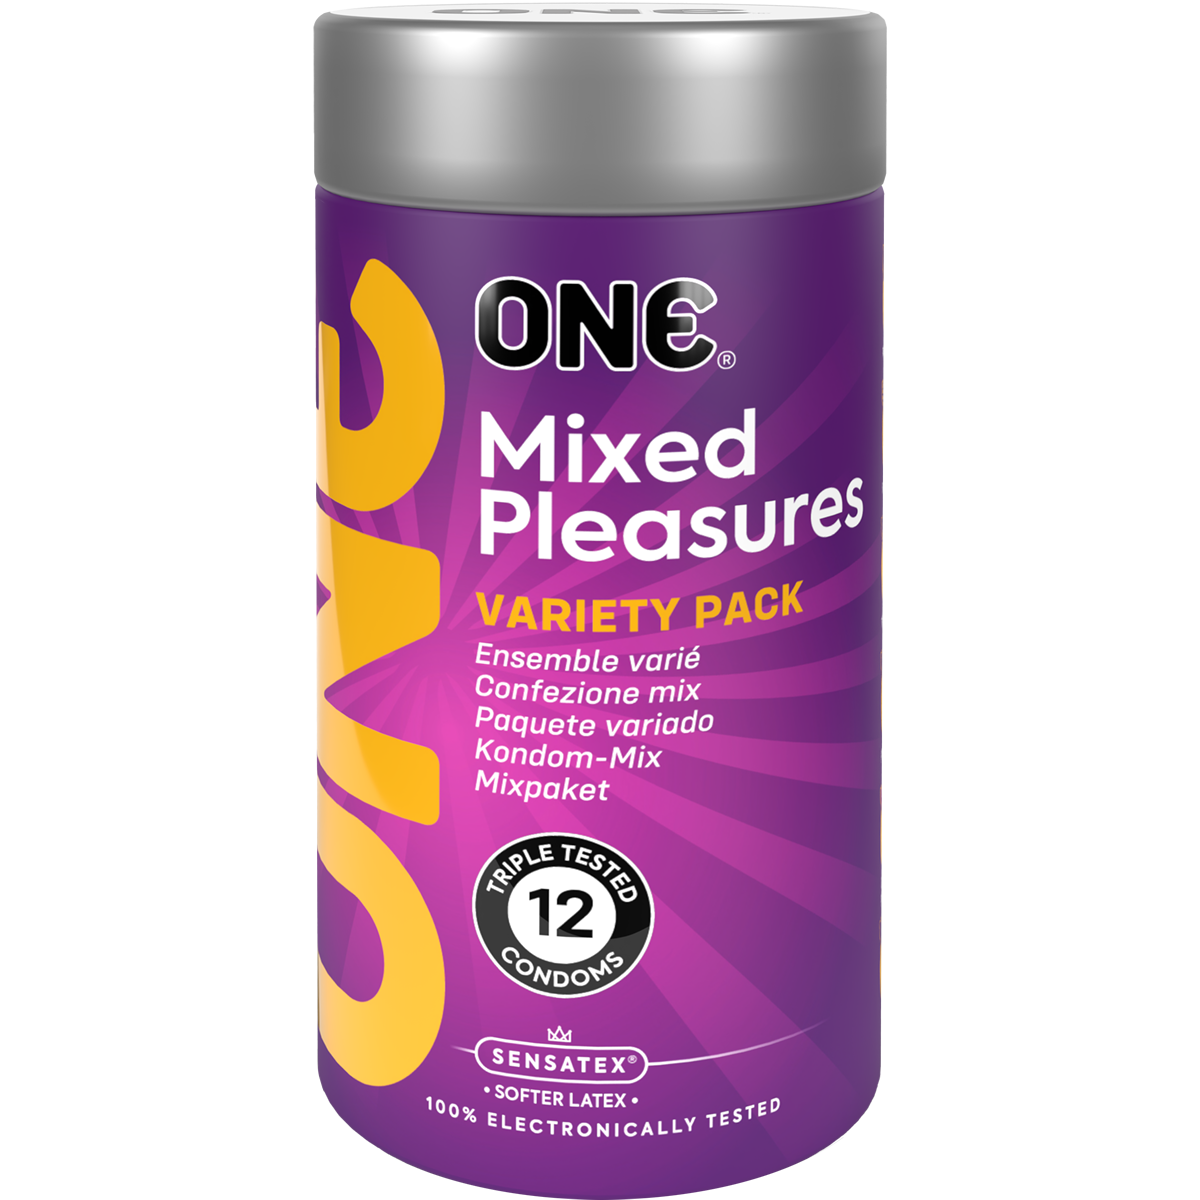 ONE «Mixed Pleasures» 12 Kondome im Sortiment - vegan & ohne schädlichen Inhaltsstoffe